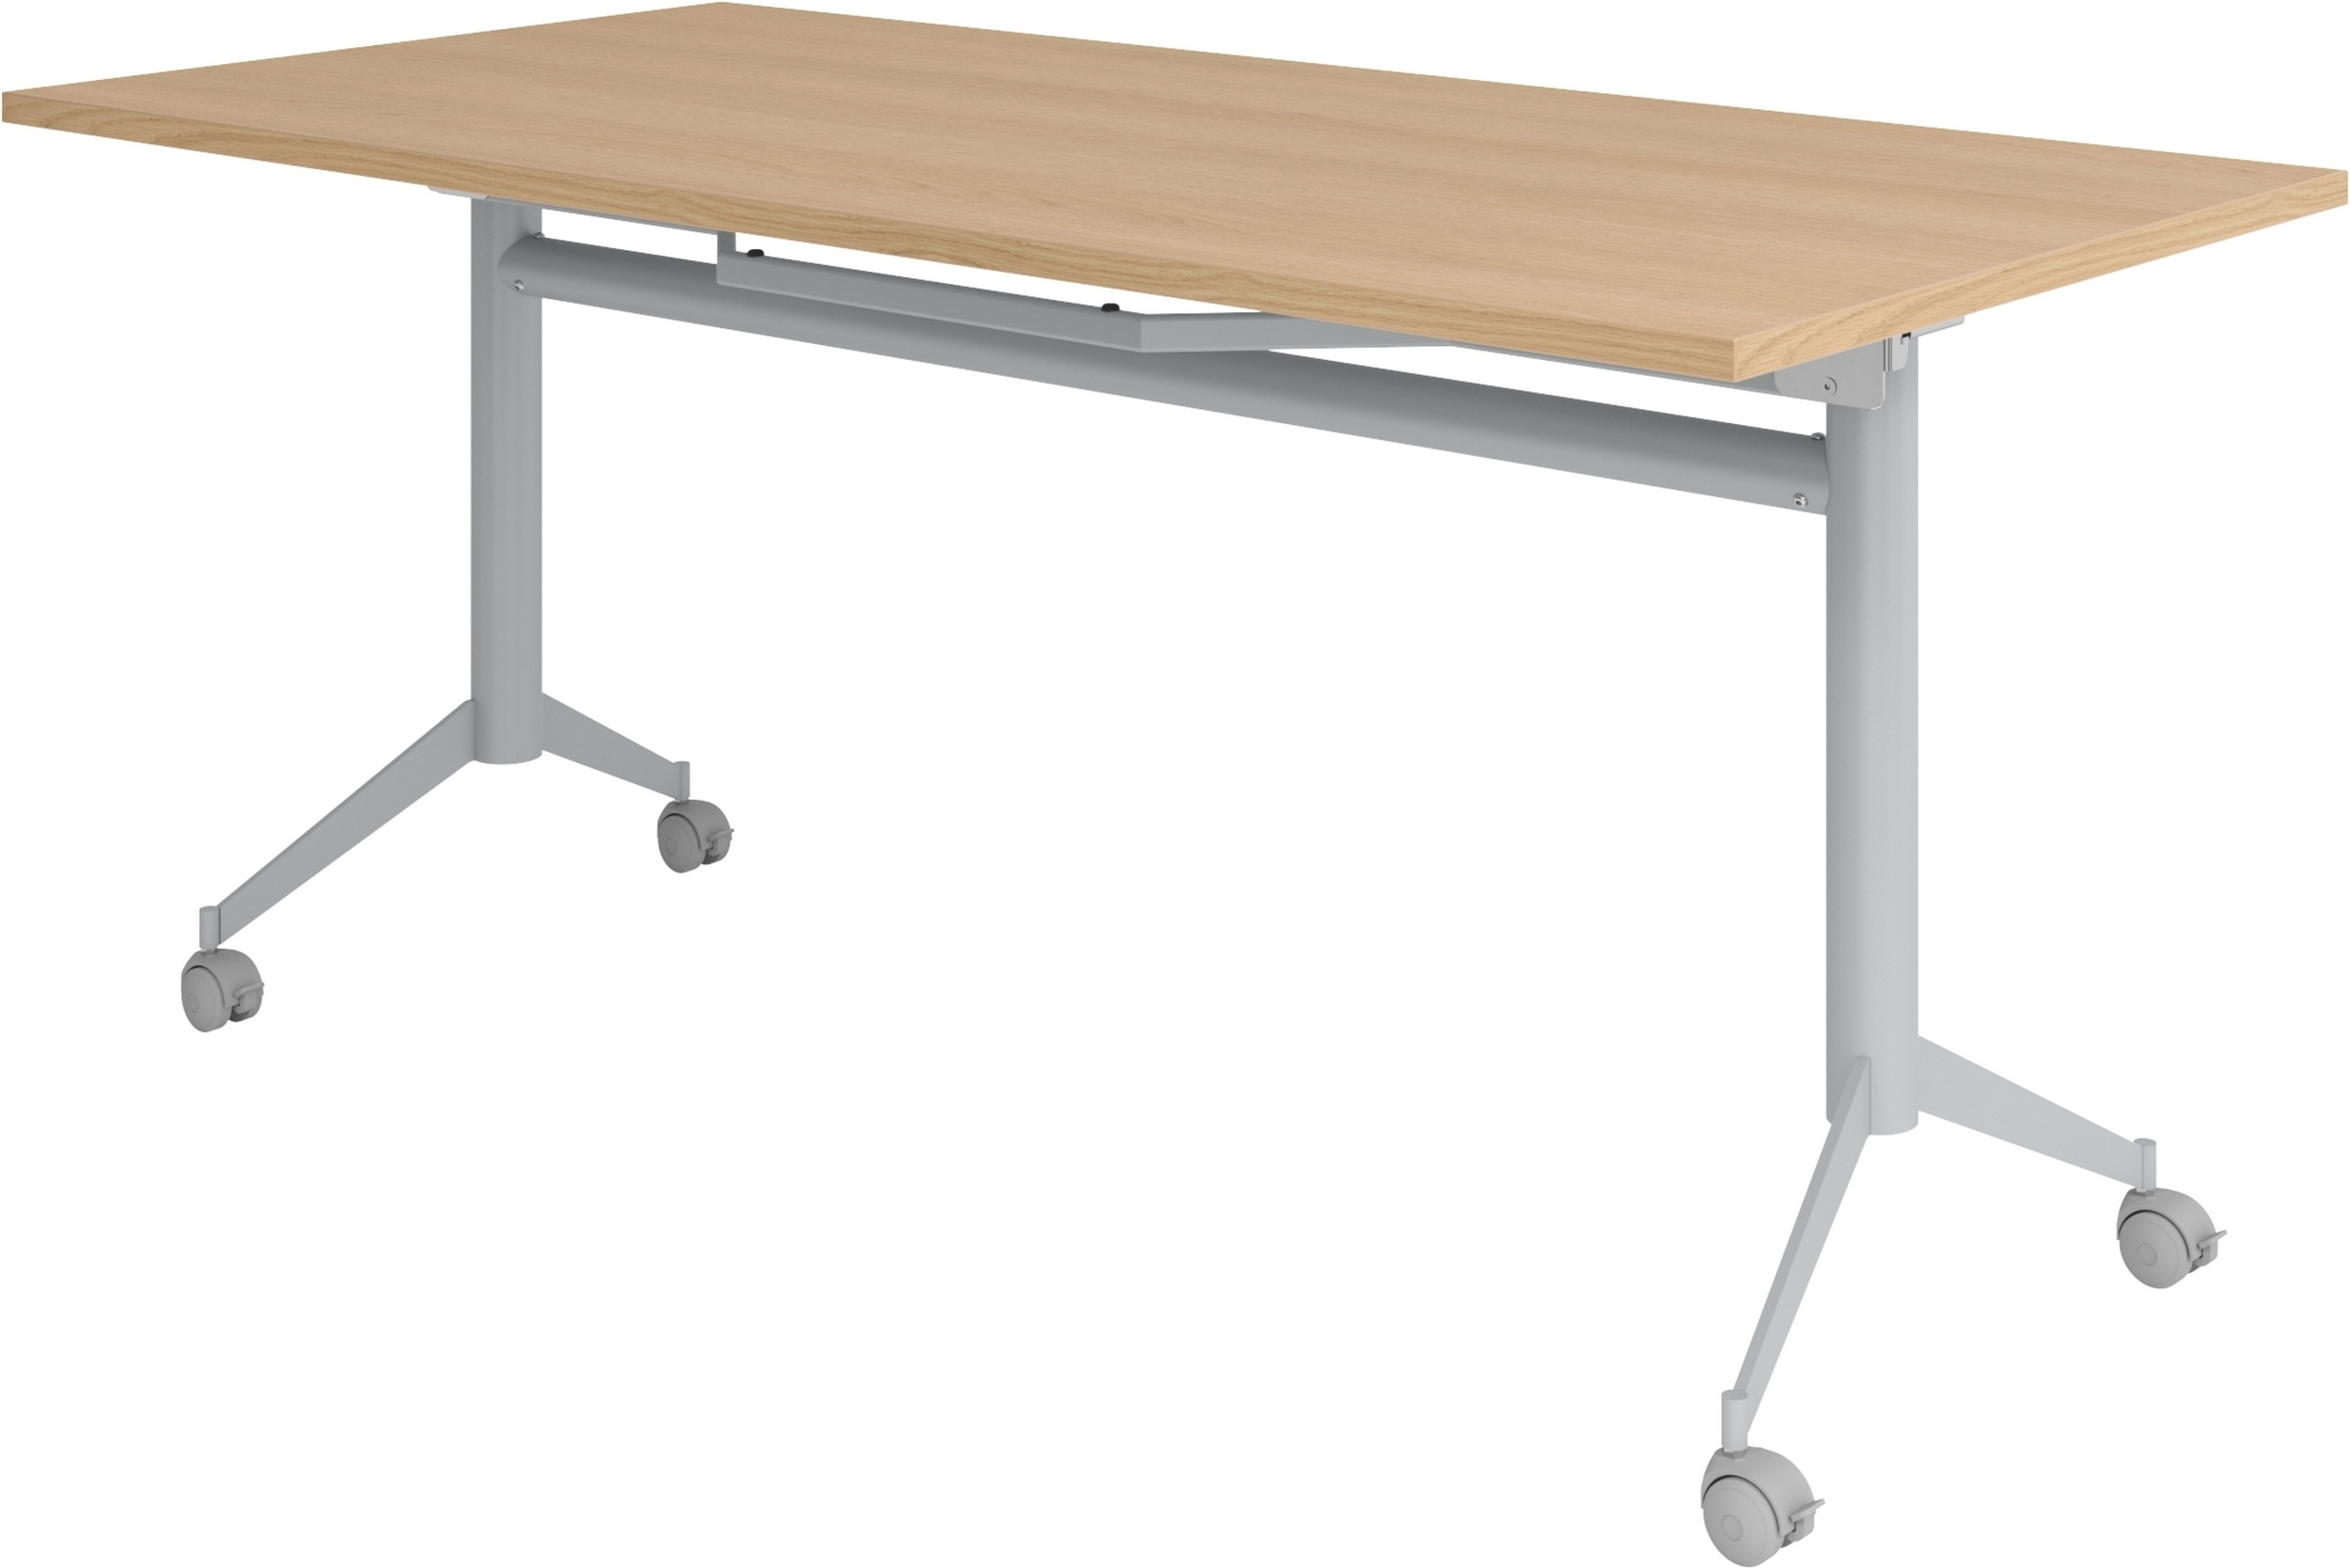 bümö Klapptisch Eiche 160 x 80 cm klappbar & fahrbar, klappbarer Schreibtisch auf Rollen, Klappschreibtisch, Tisch klappbar, Klappbarer Tisch,